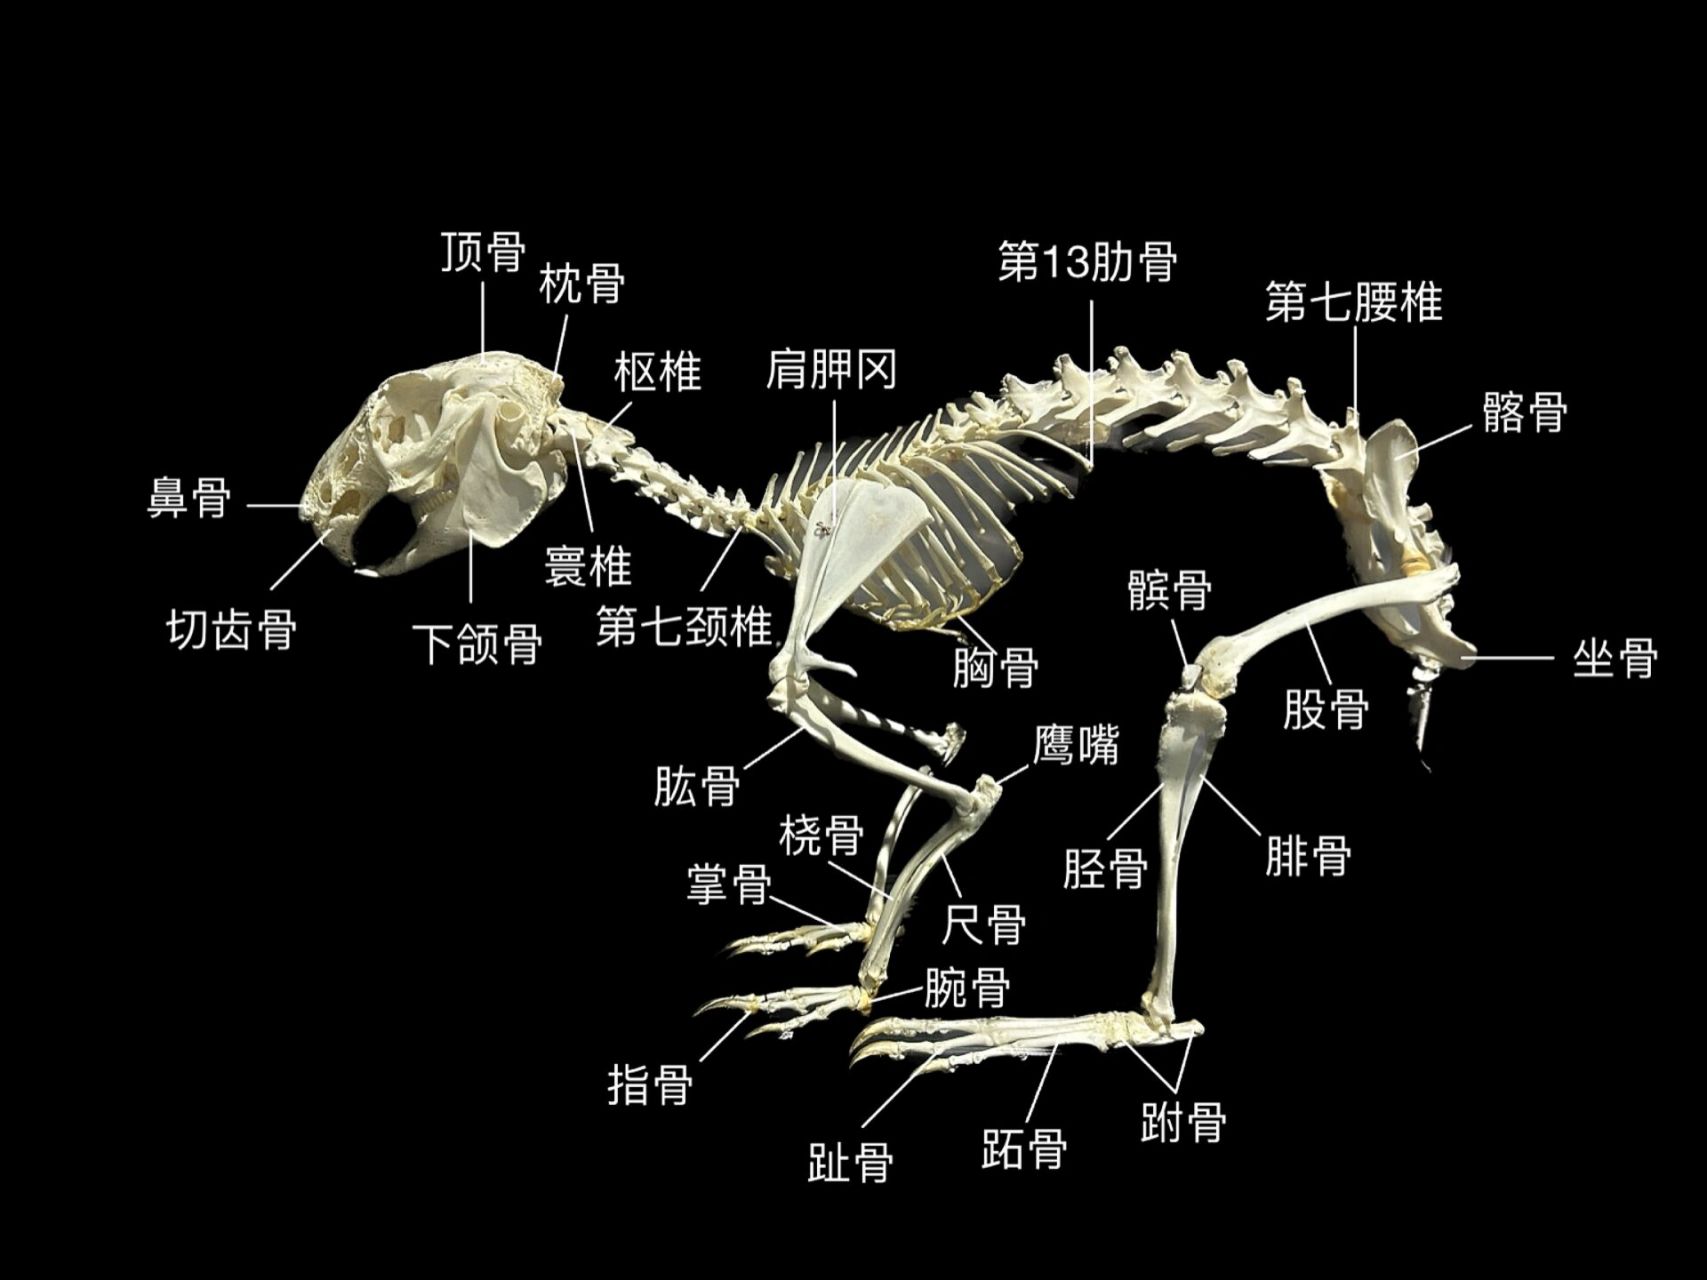 92兔兔骨骼图鉴:零基础易懂版99 在标本馆拍的